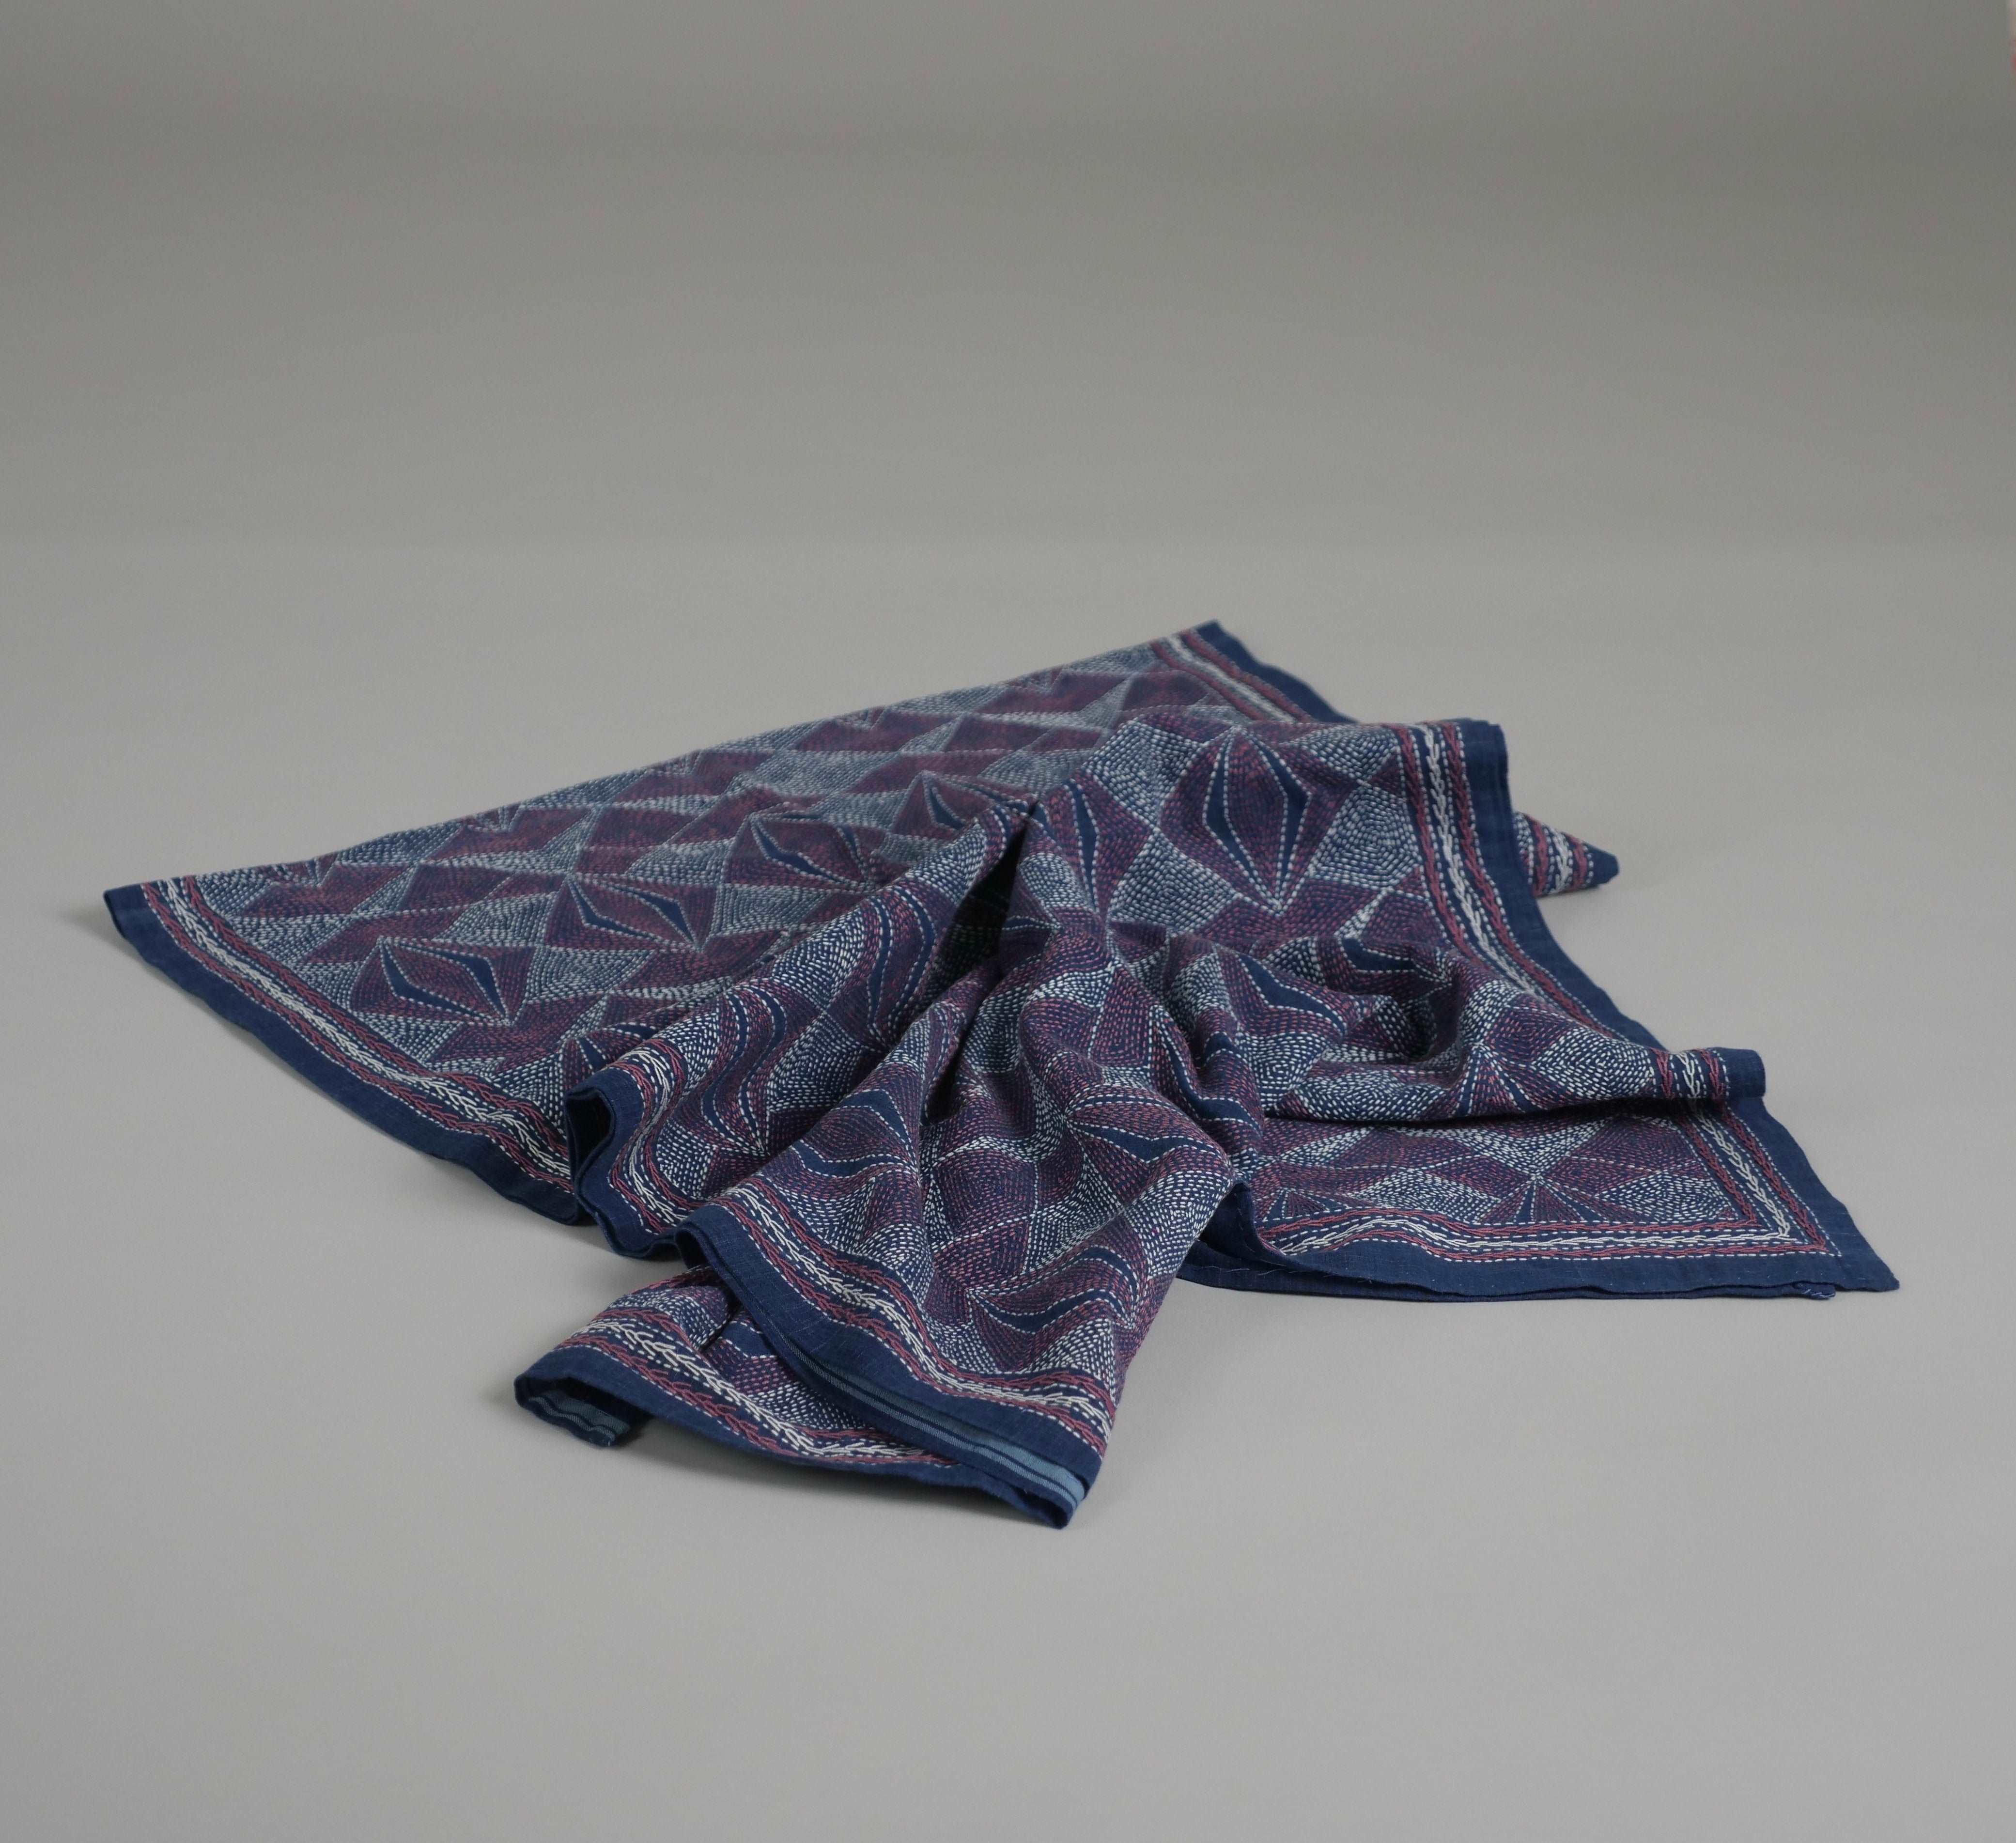 Kantha embroidered shawl, diamonds